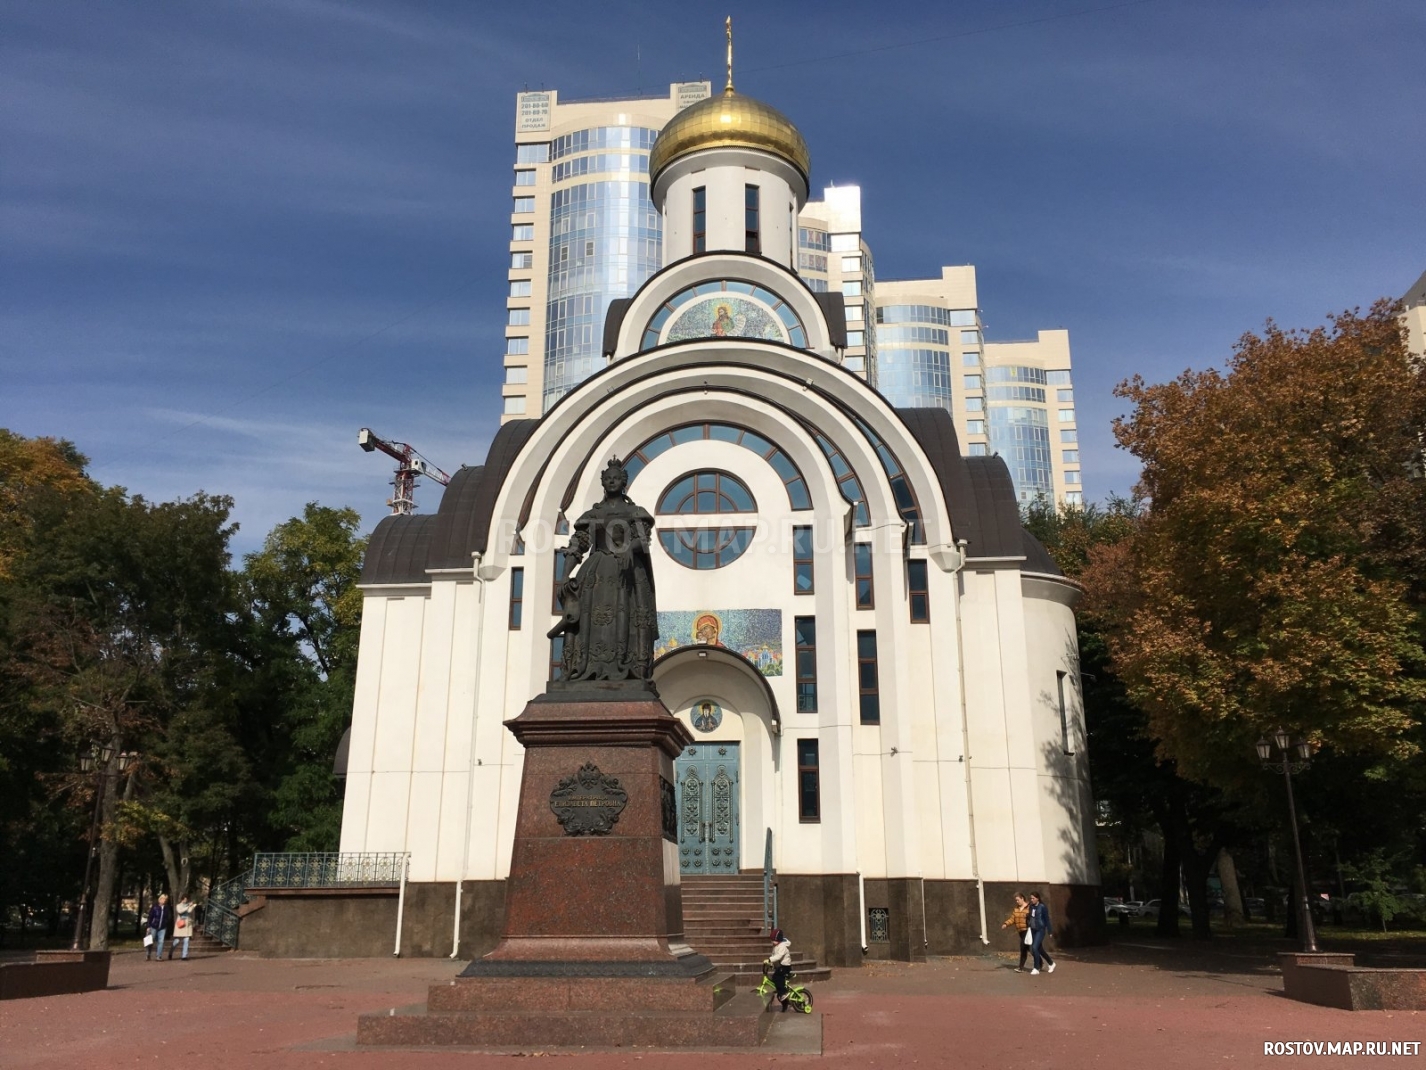  Свято-Покровский храм, Современные, Достопримечательности, Цветные